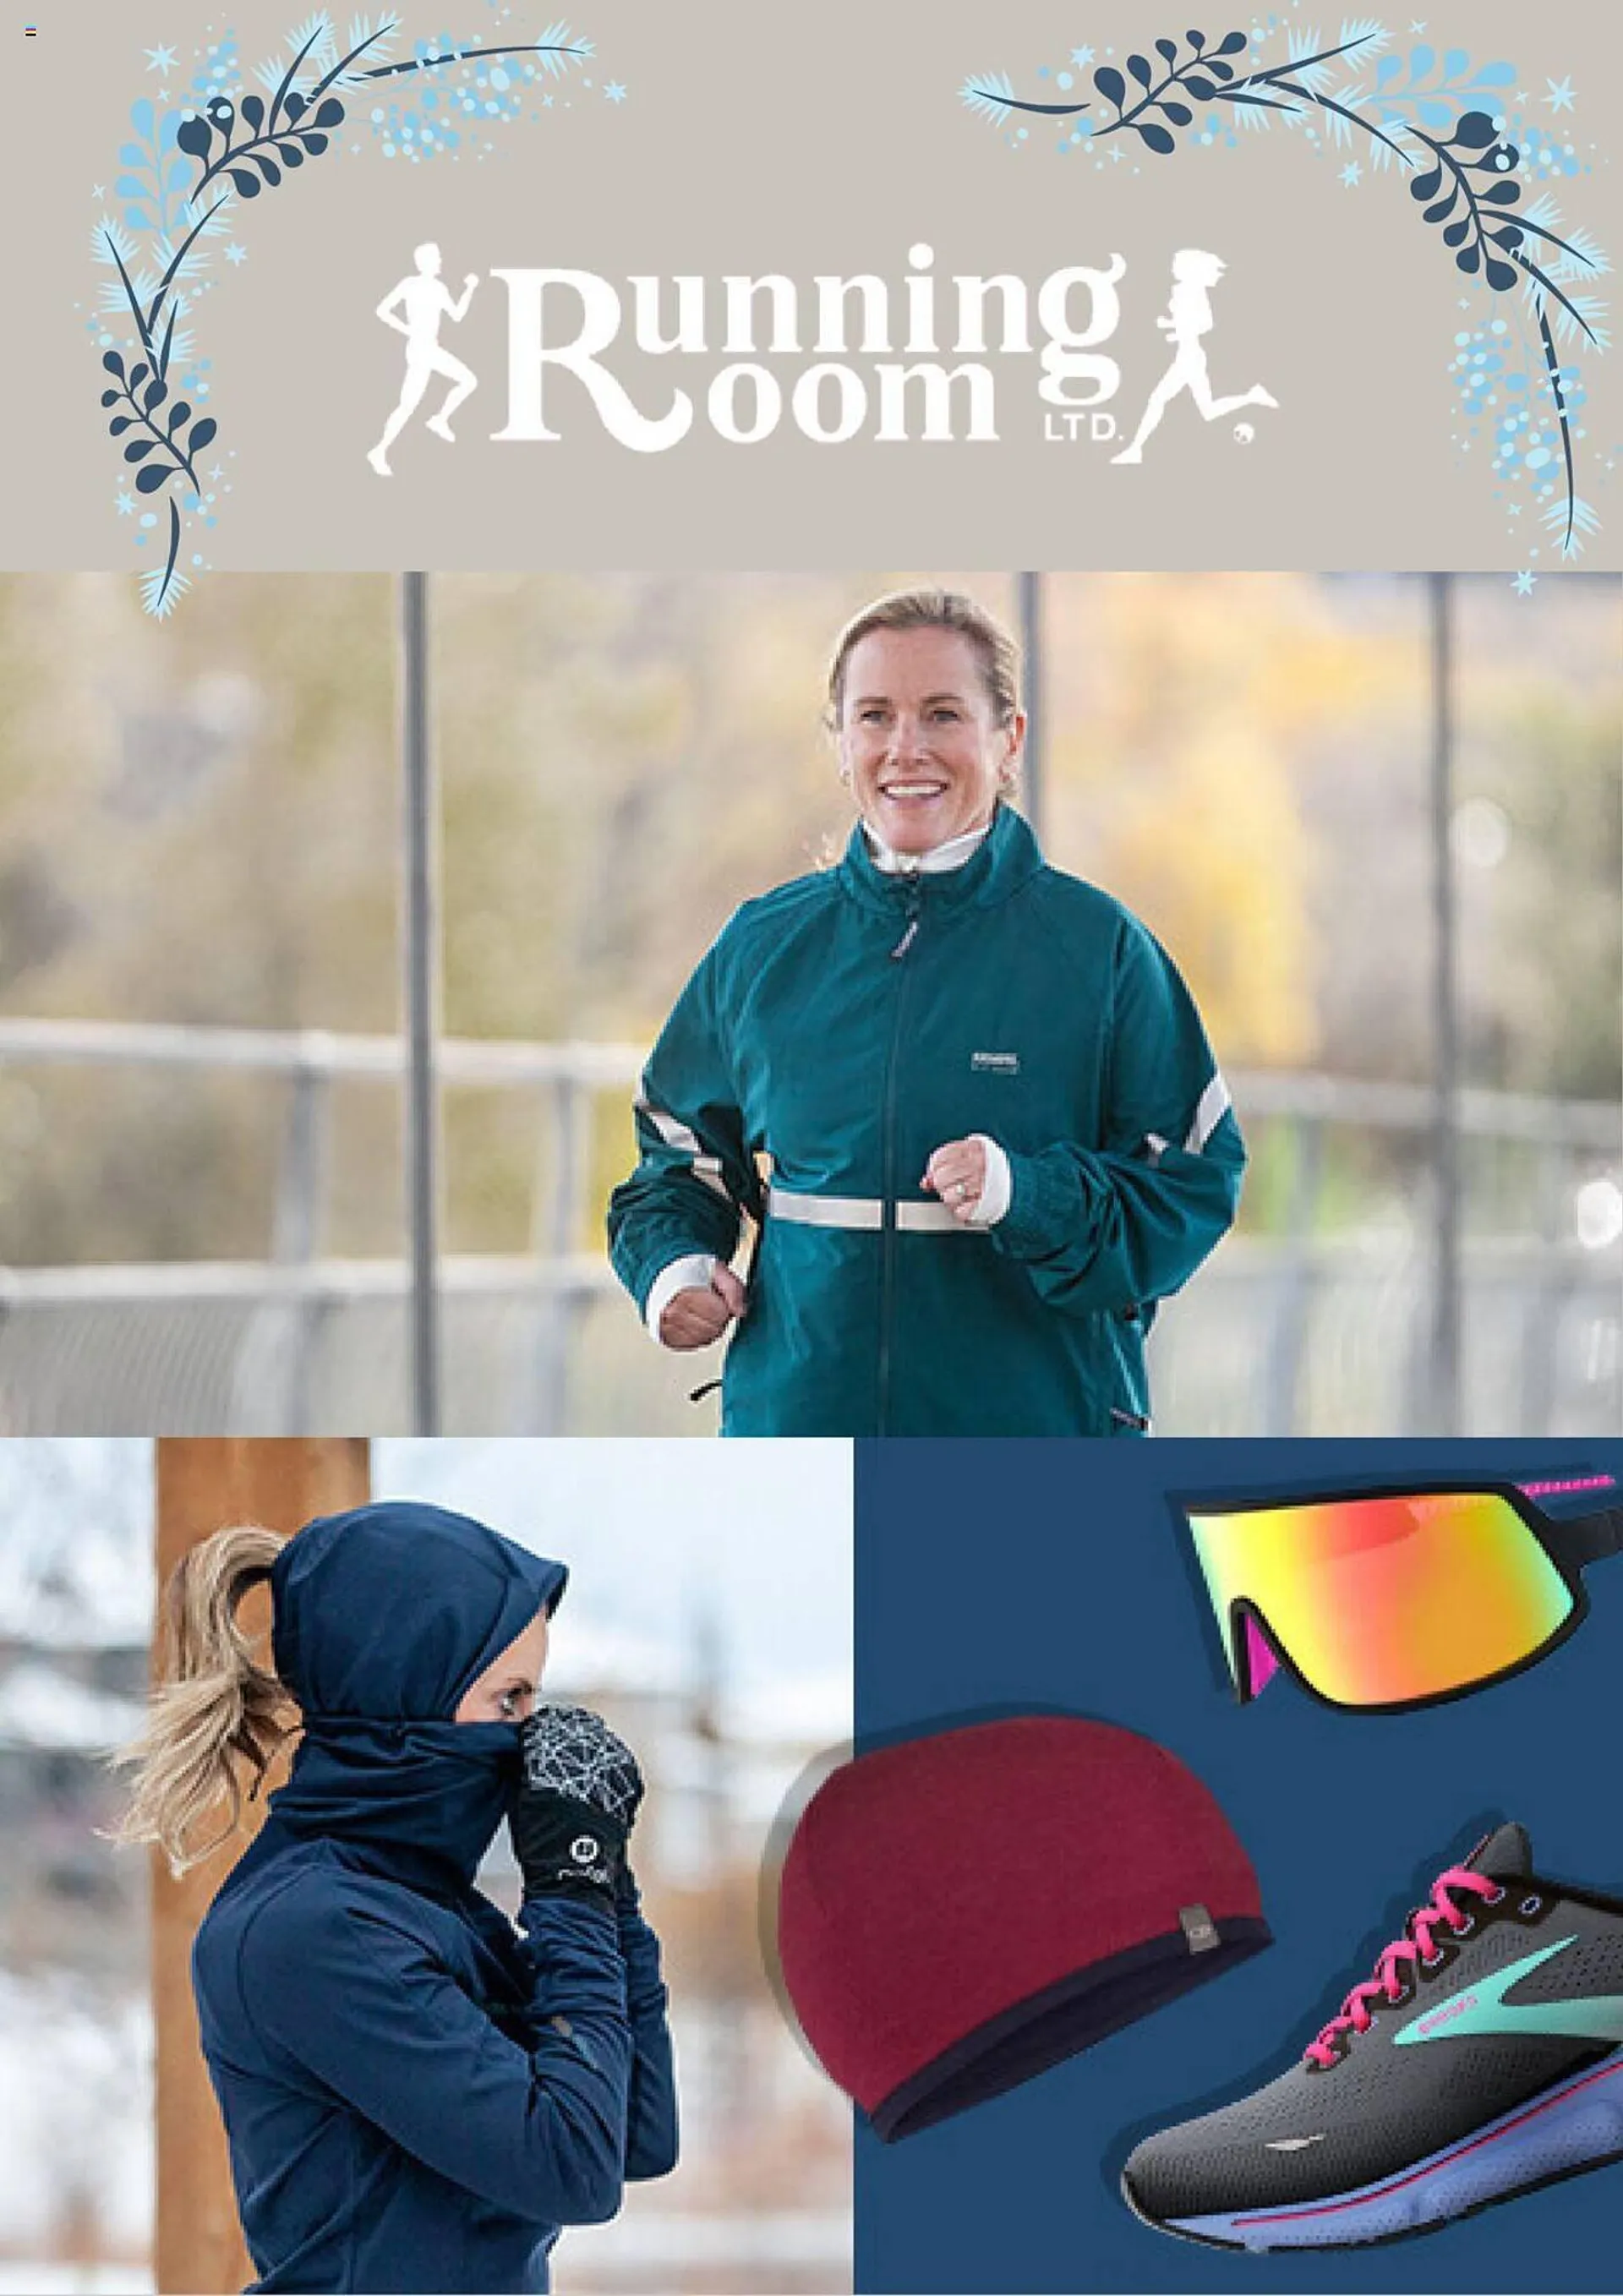 Running Room flyer - 1